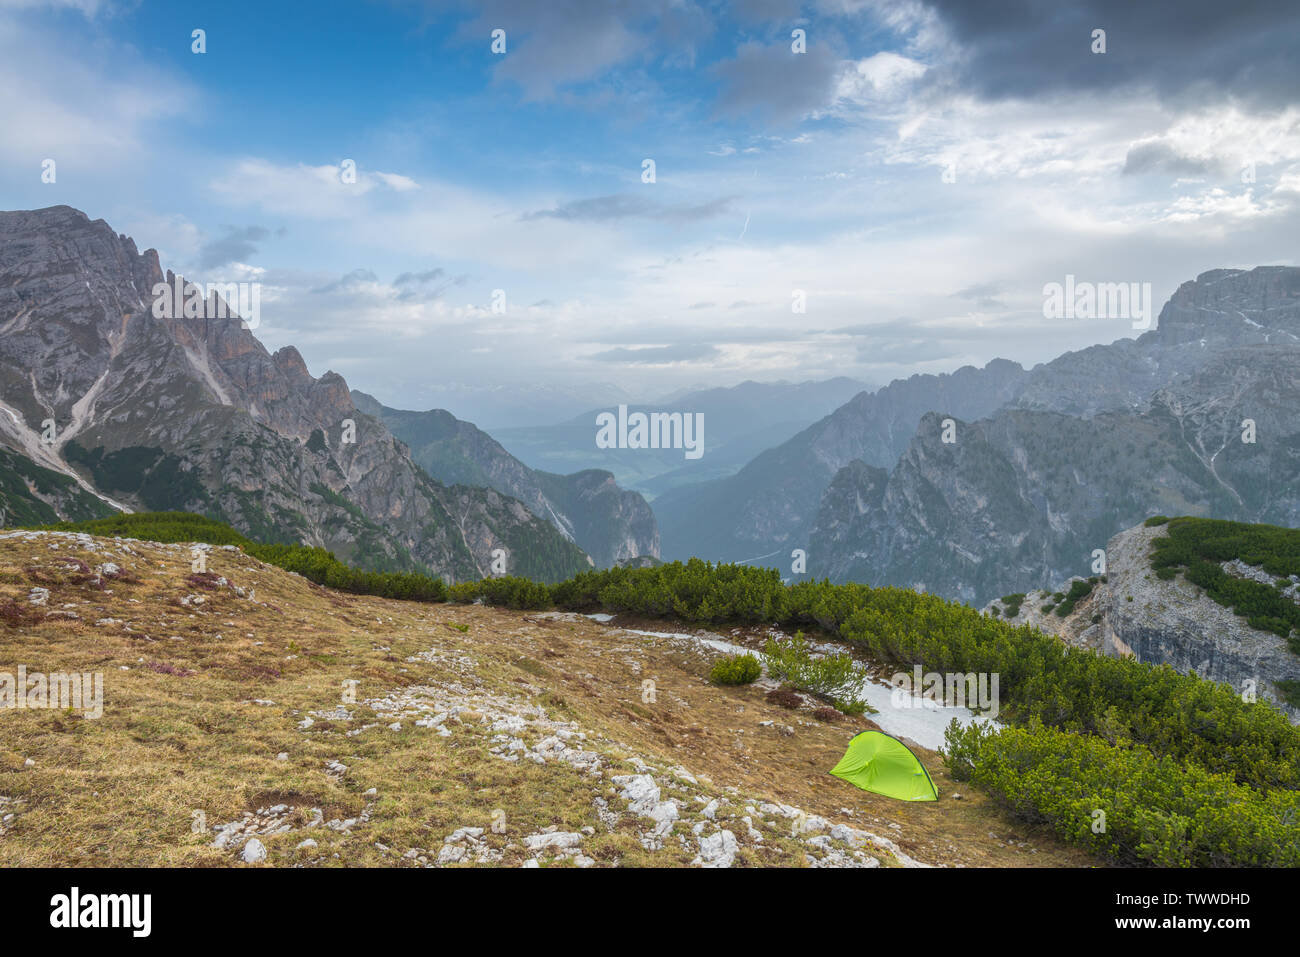 Campeggio da solista con una solitaria, verde Berghaus tenda in alto paese alpino dell'Italia Dolomiti. Campeggio selvaggio in cima a una montagna. 'S tenda singola. Foto Stock